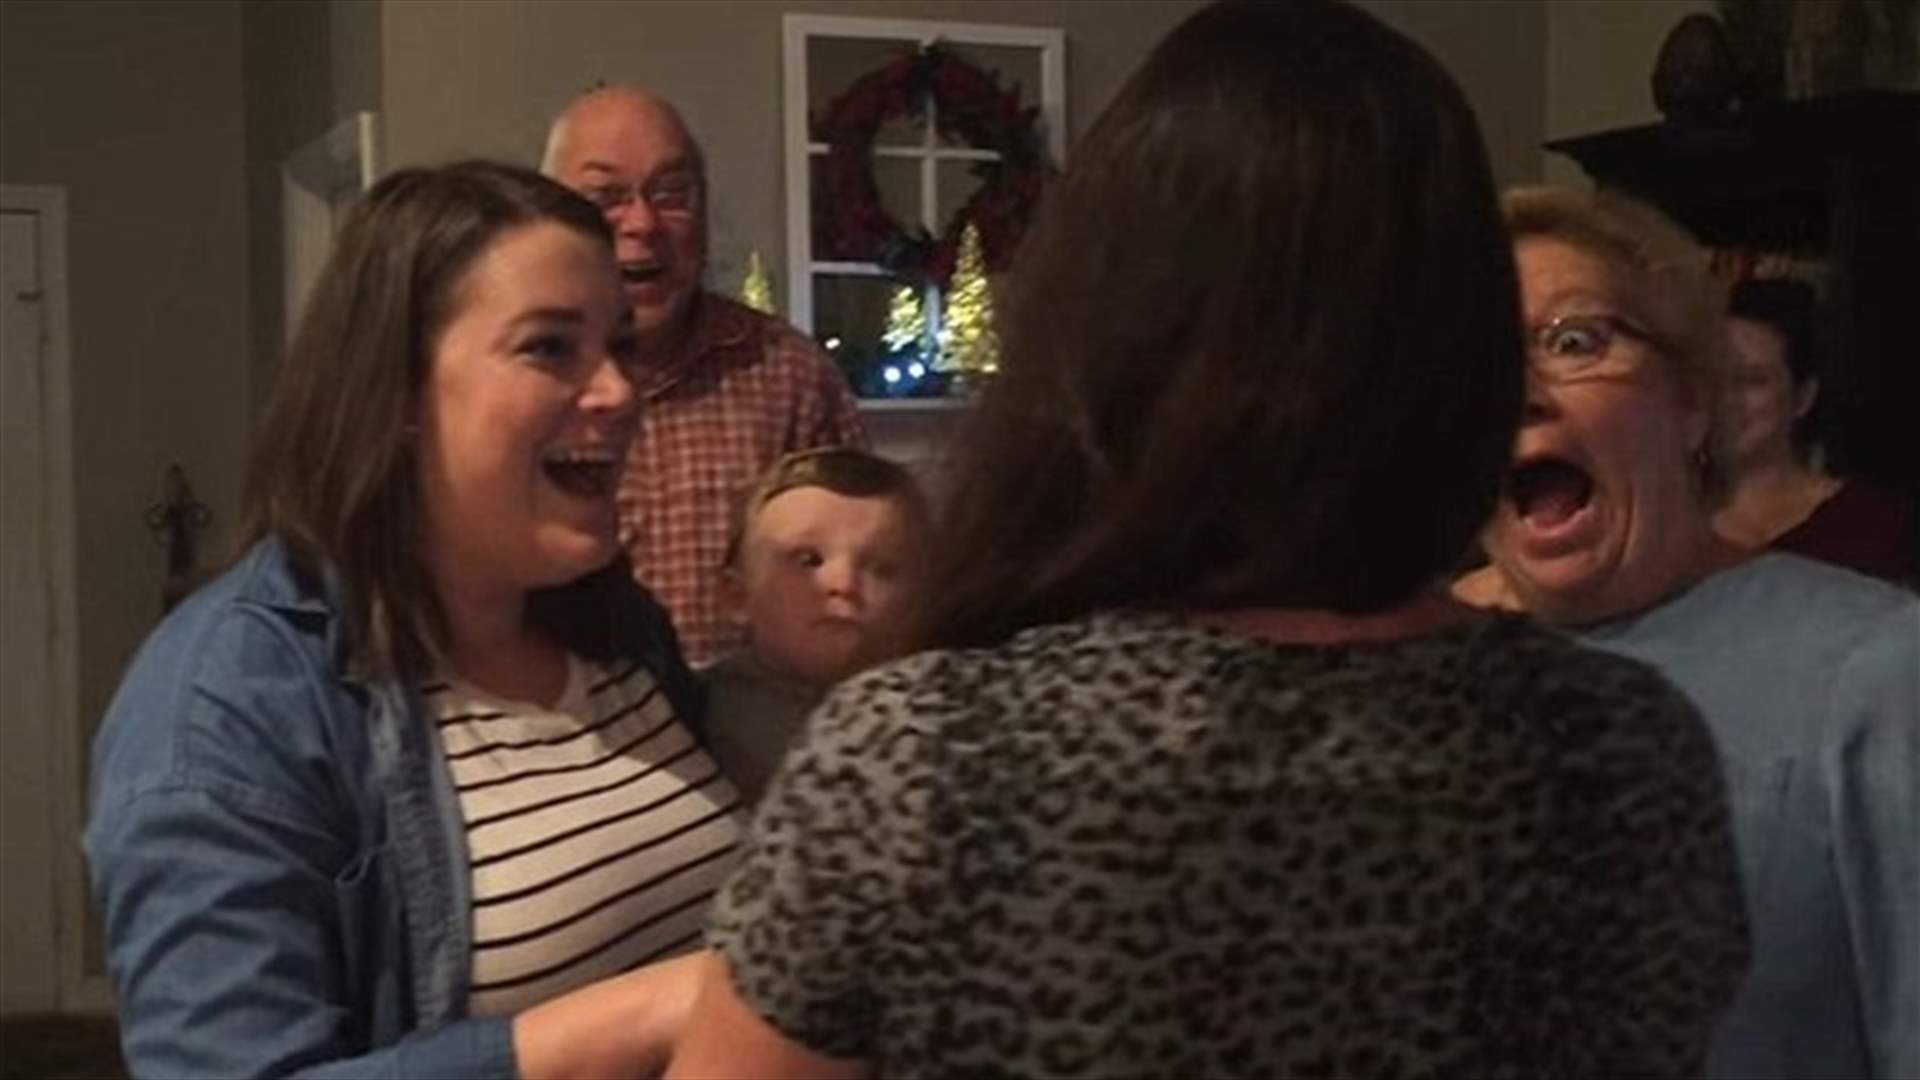 بالفيديو: ثنائي فاجأ العائلة بأجمل هدية عيد ميلاد على الإطلاق